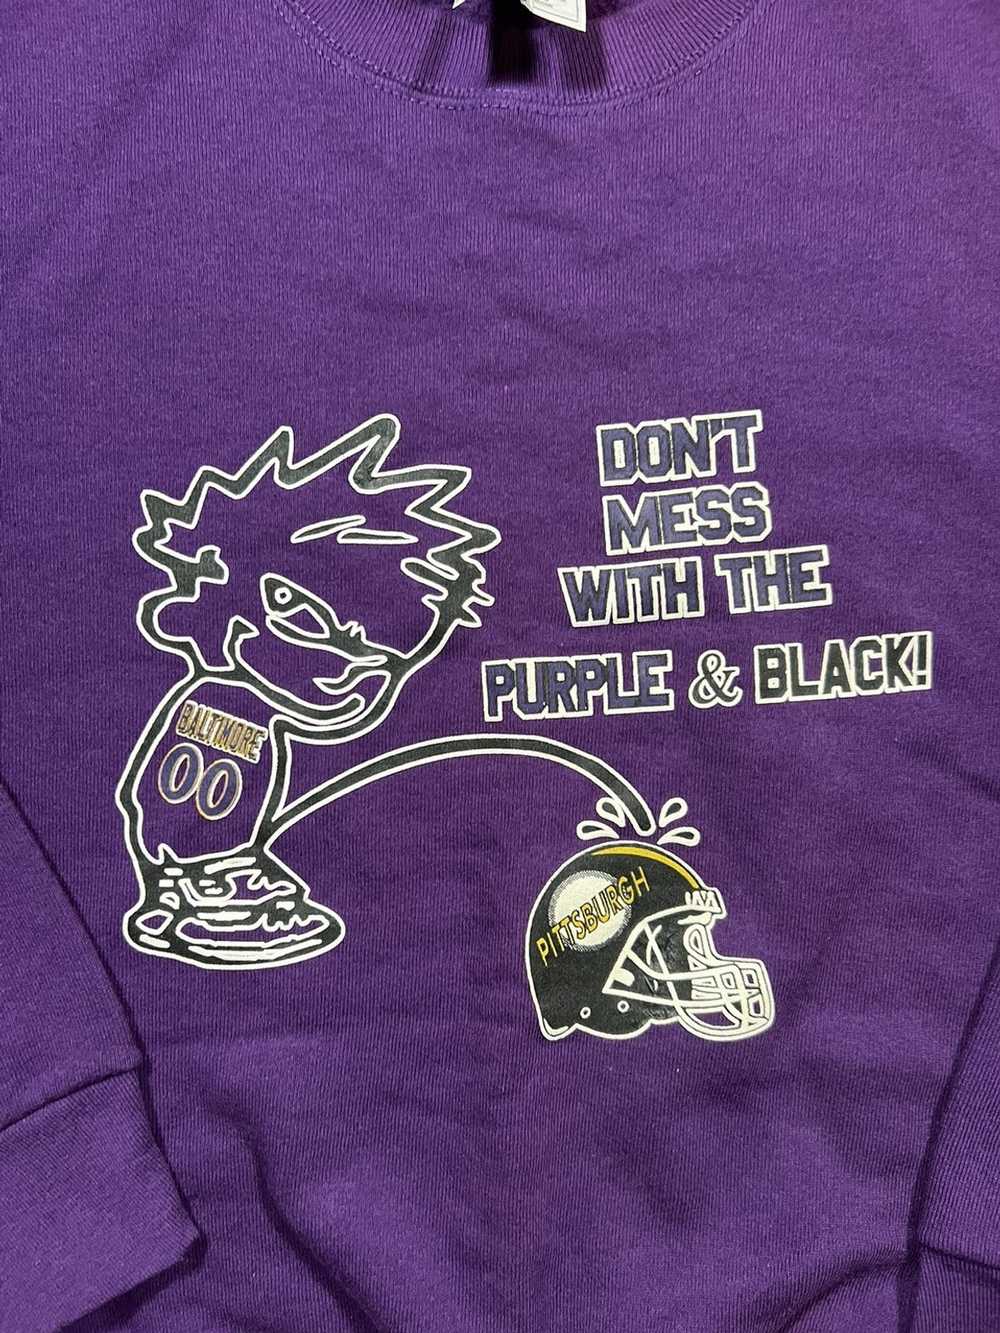 Baltimore Orioles Baltimore Ravens Baltimore Christos Baltimore Blast  Baltimore Nighthawks logo Baltimore city shirt - Limotees